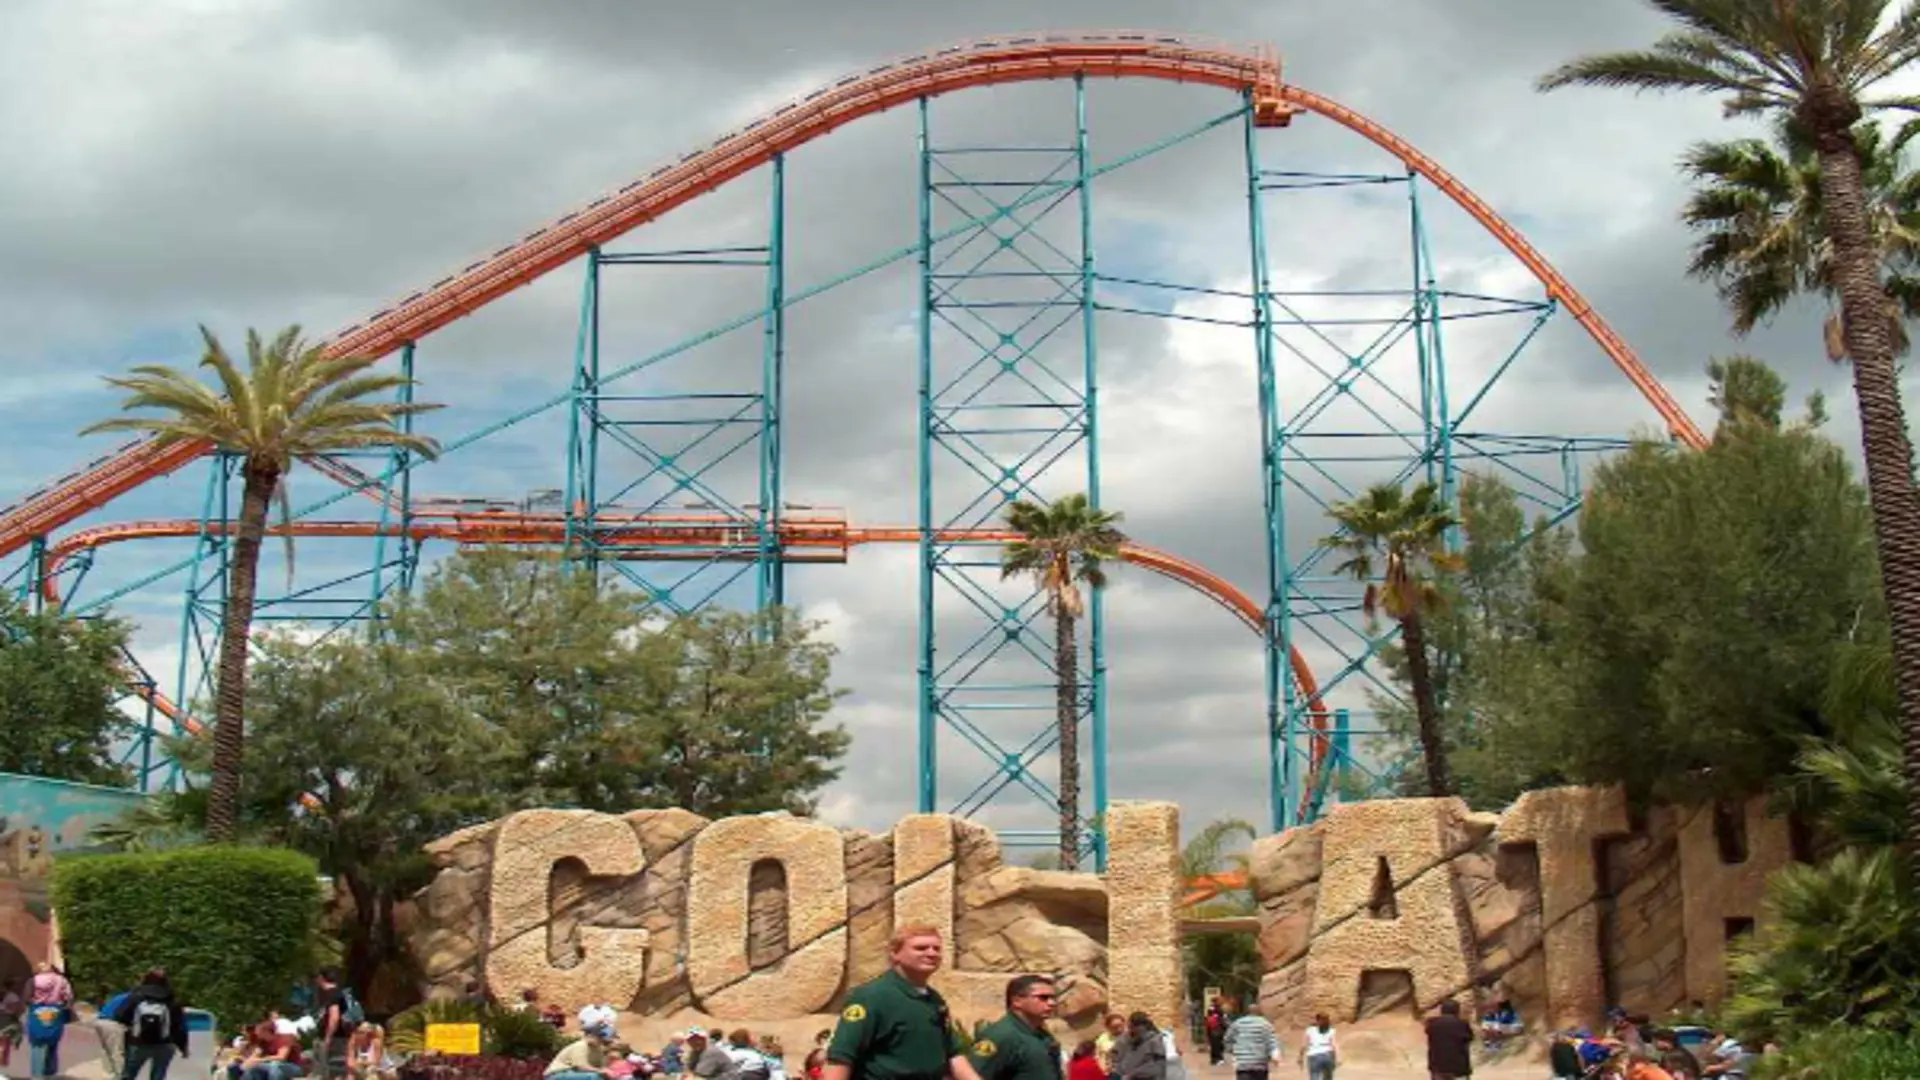 Goliath Six Flags Magic Mountain